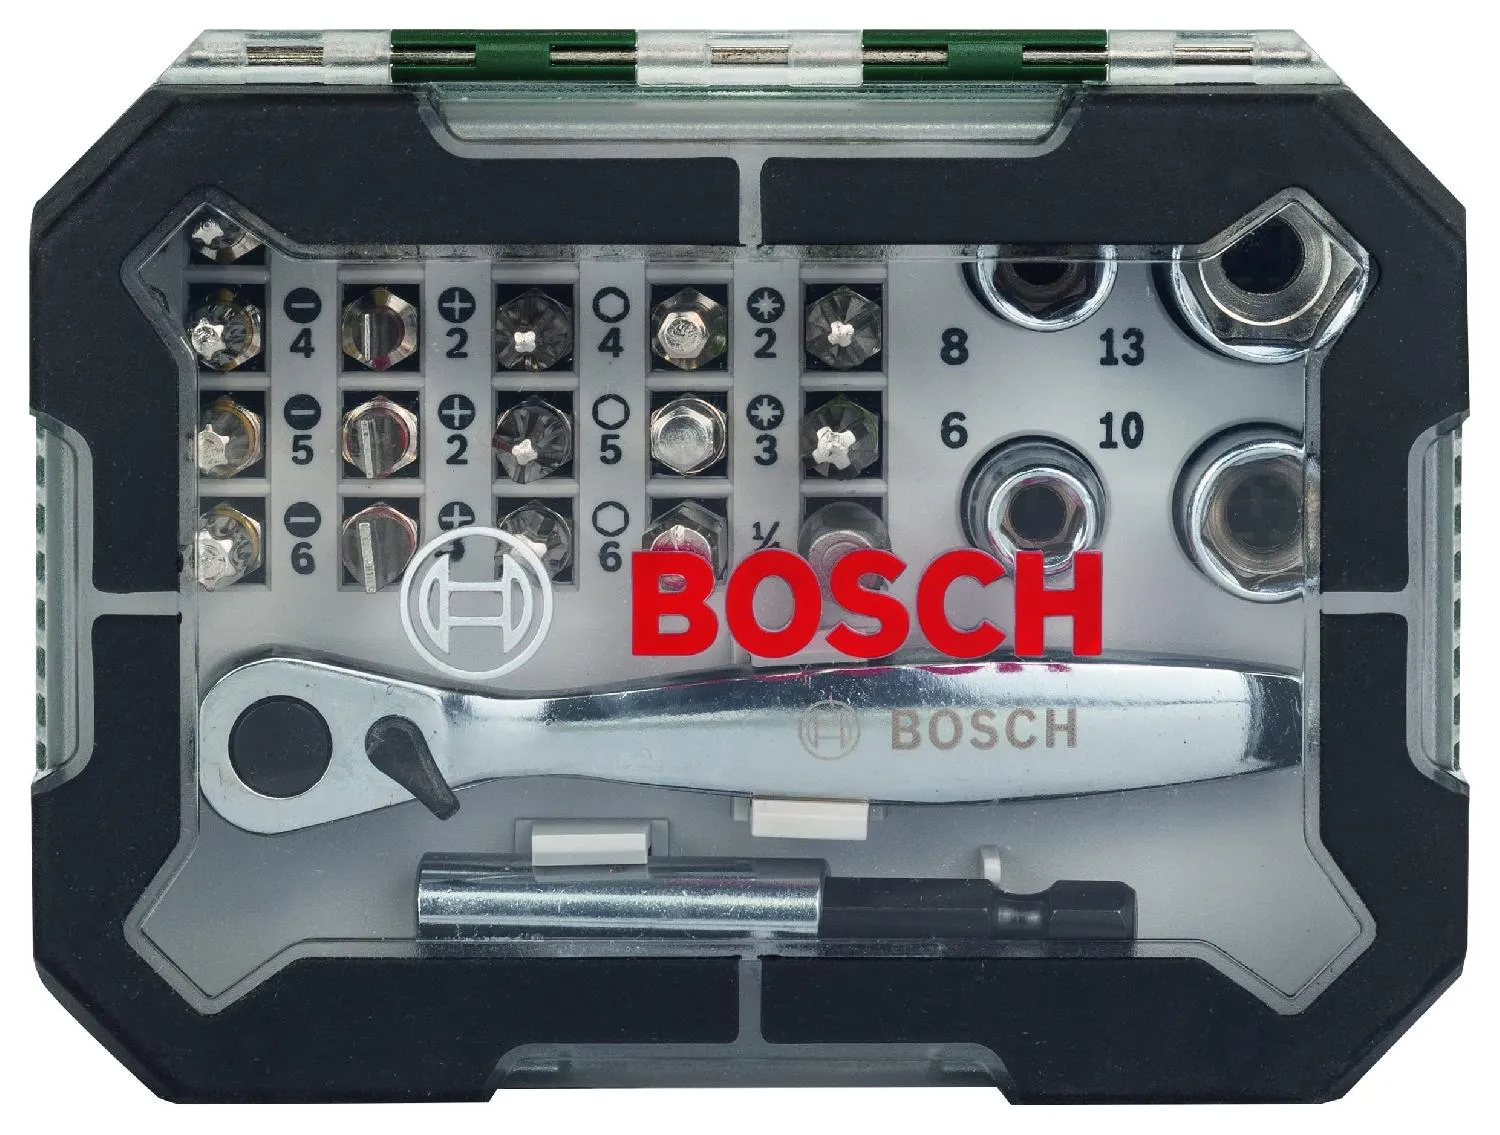 Bosch Chiavi a Cricchetto Valigetta chiavi Set 26 pezzi croce